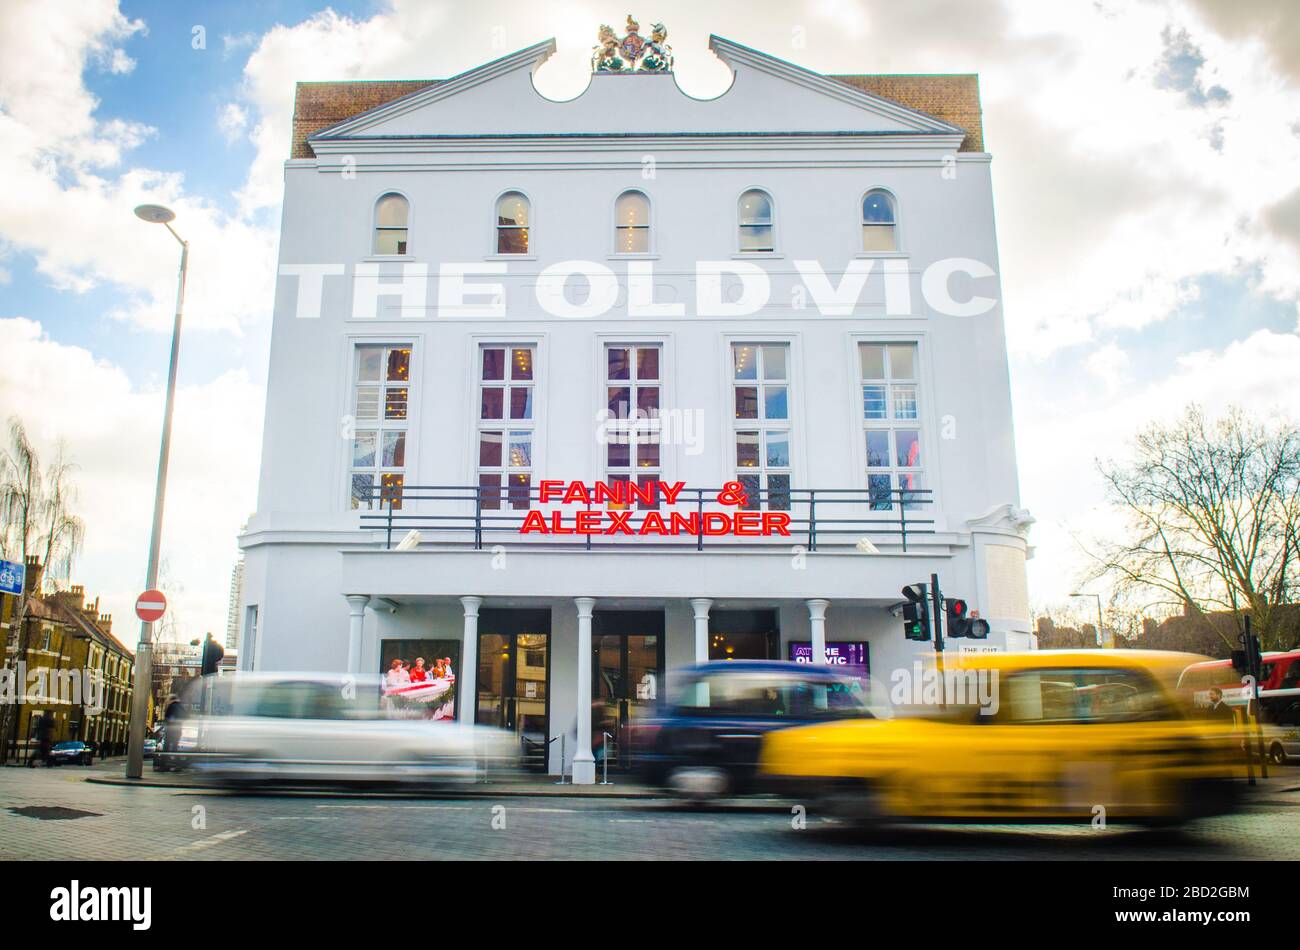 LONDON - MÄRZ 2018: Das Old Vic Theatre, ein berühmtes 1000-Sitz-Theater in der Nähe des Bahnhofs Waterloo im Süden Londons Stockfoto